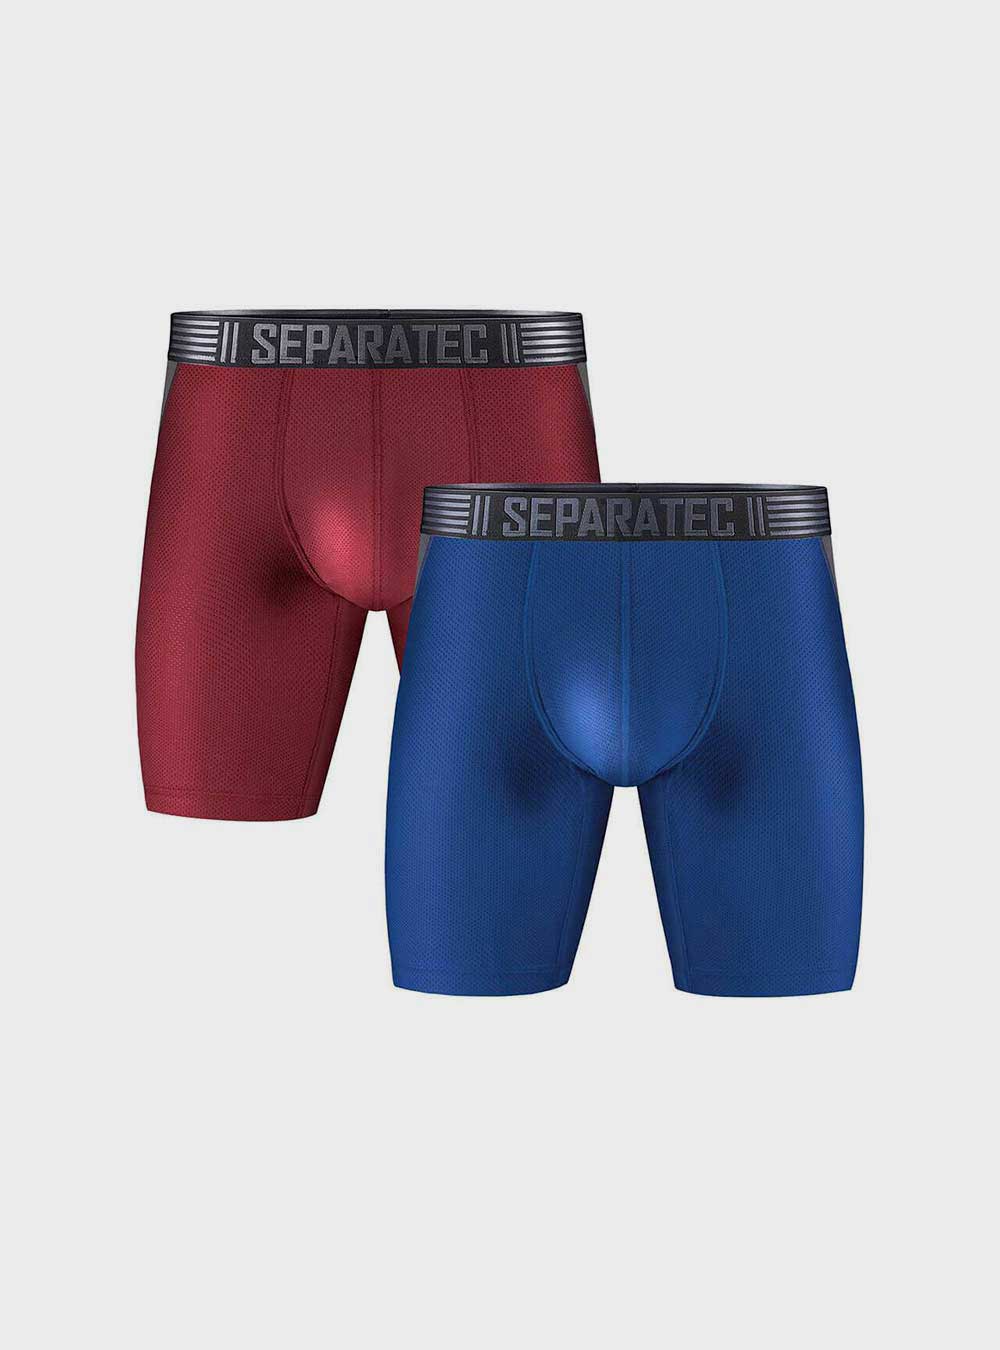 Separatec Men's Underwear Trunks Dual Pouch Boxer Shorts Comfort Flex Fit  Premium Cotton Modal Blend Boxer Briefs 3 Pack - ShopStyle